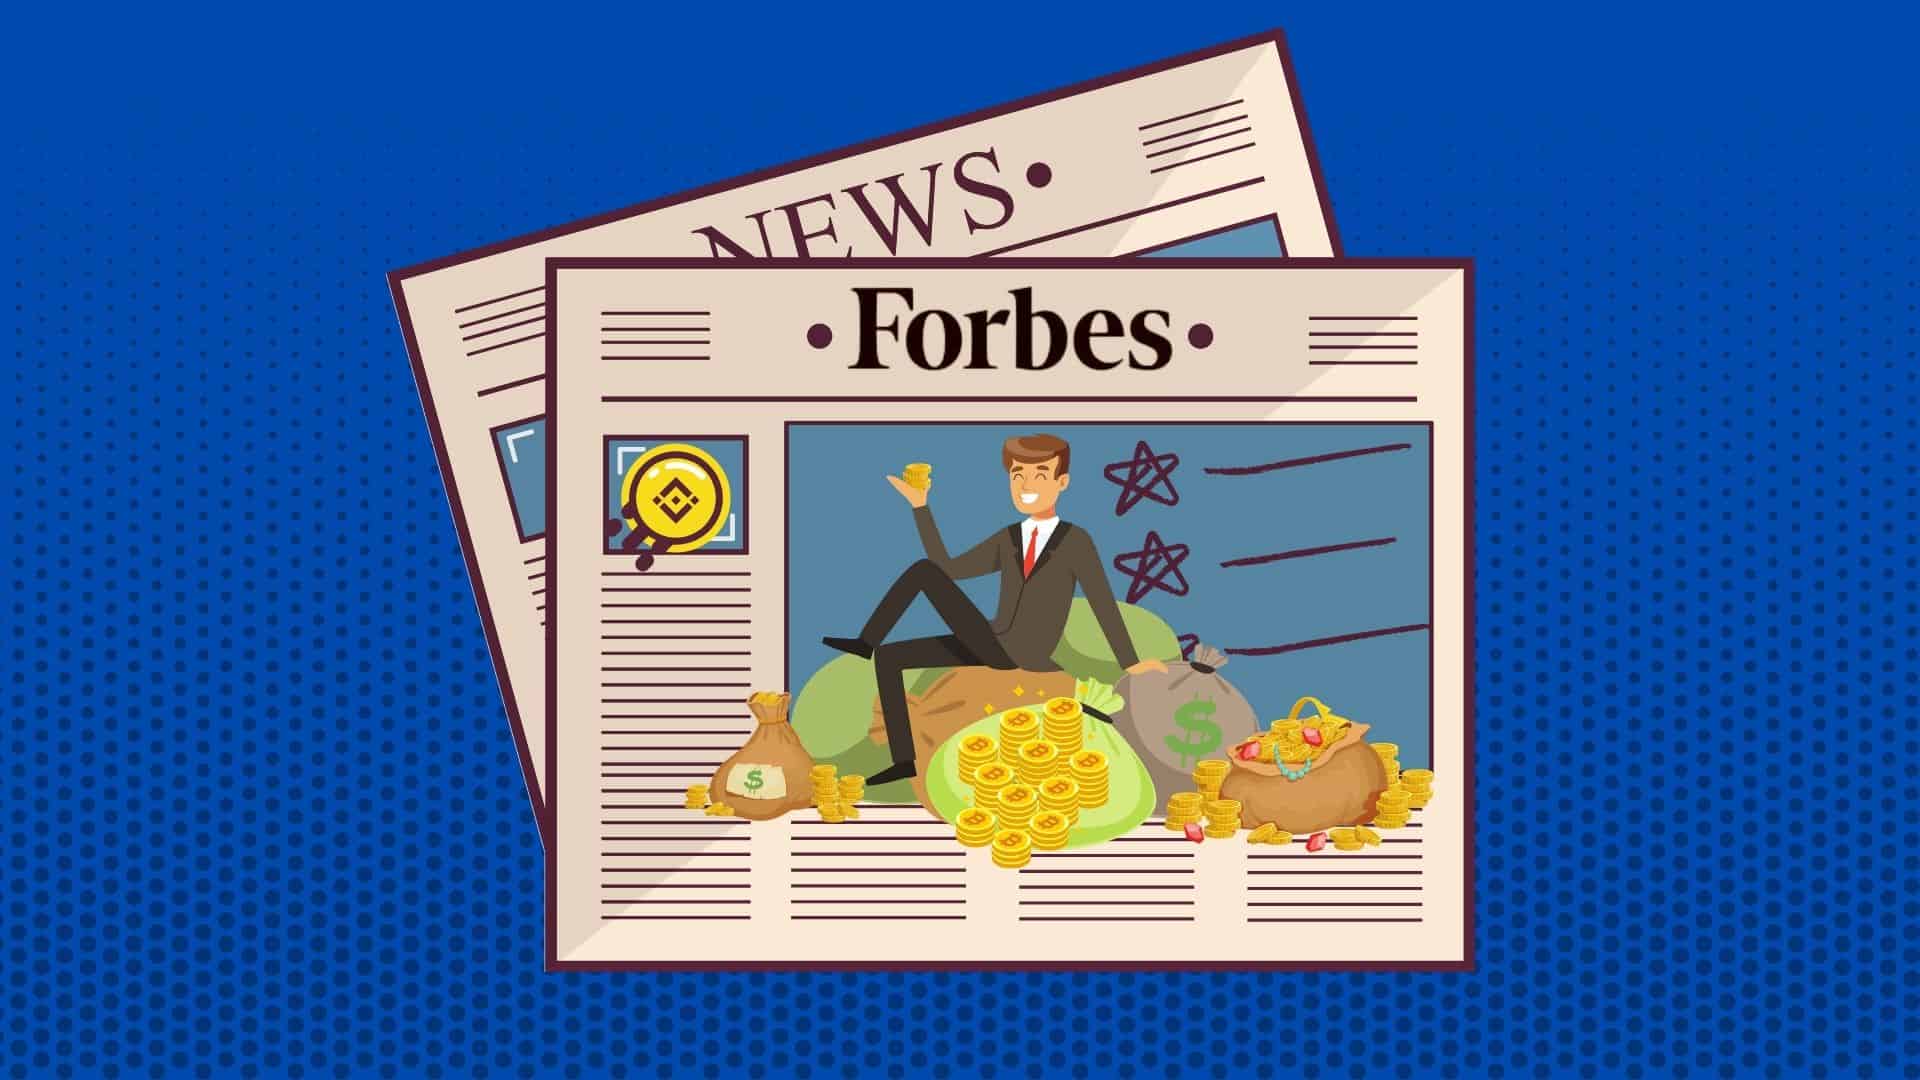 Forbes опубликовал рейтинг криптомиллиардеров. В нем семь новых имен. Заглавный коллаж новости.